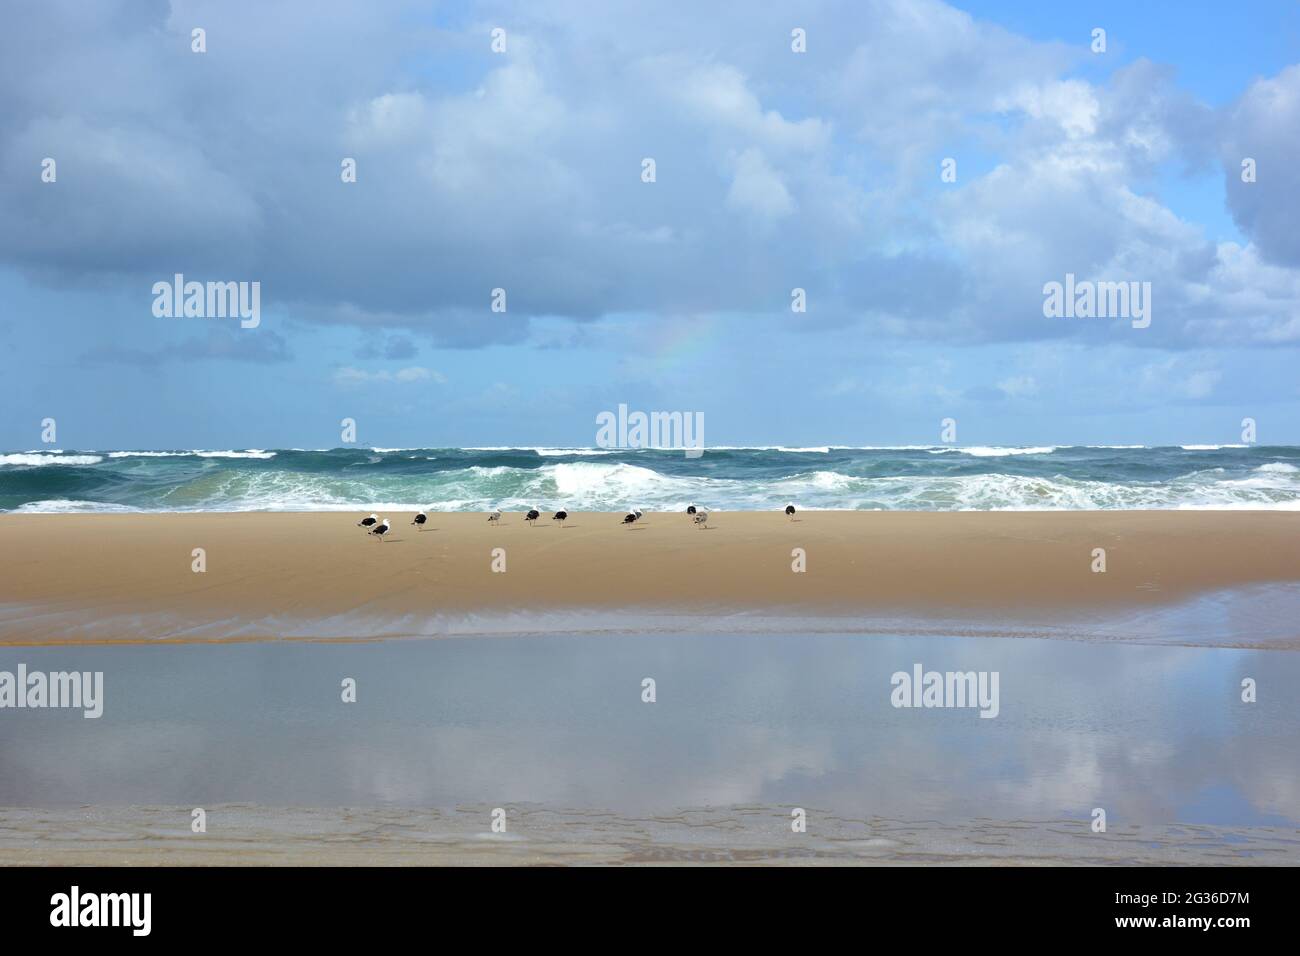 Frankreich, Aquitaine, Atlantischer Strand, die steigende Flut wird die Sandbank allmählich bedecken, um eine Strömung in der Depression im Vordergrund zu bilden. Stockfoto